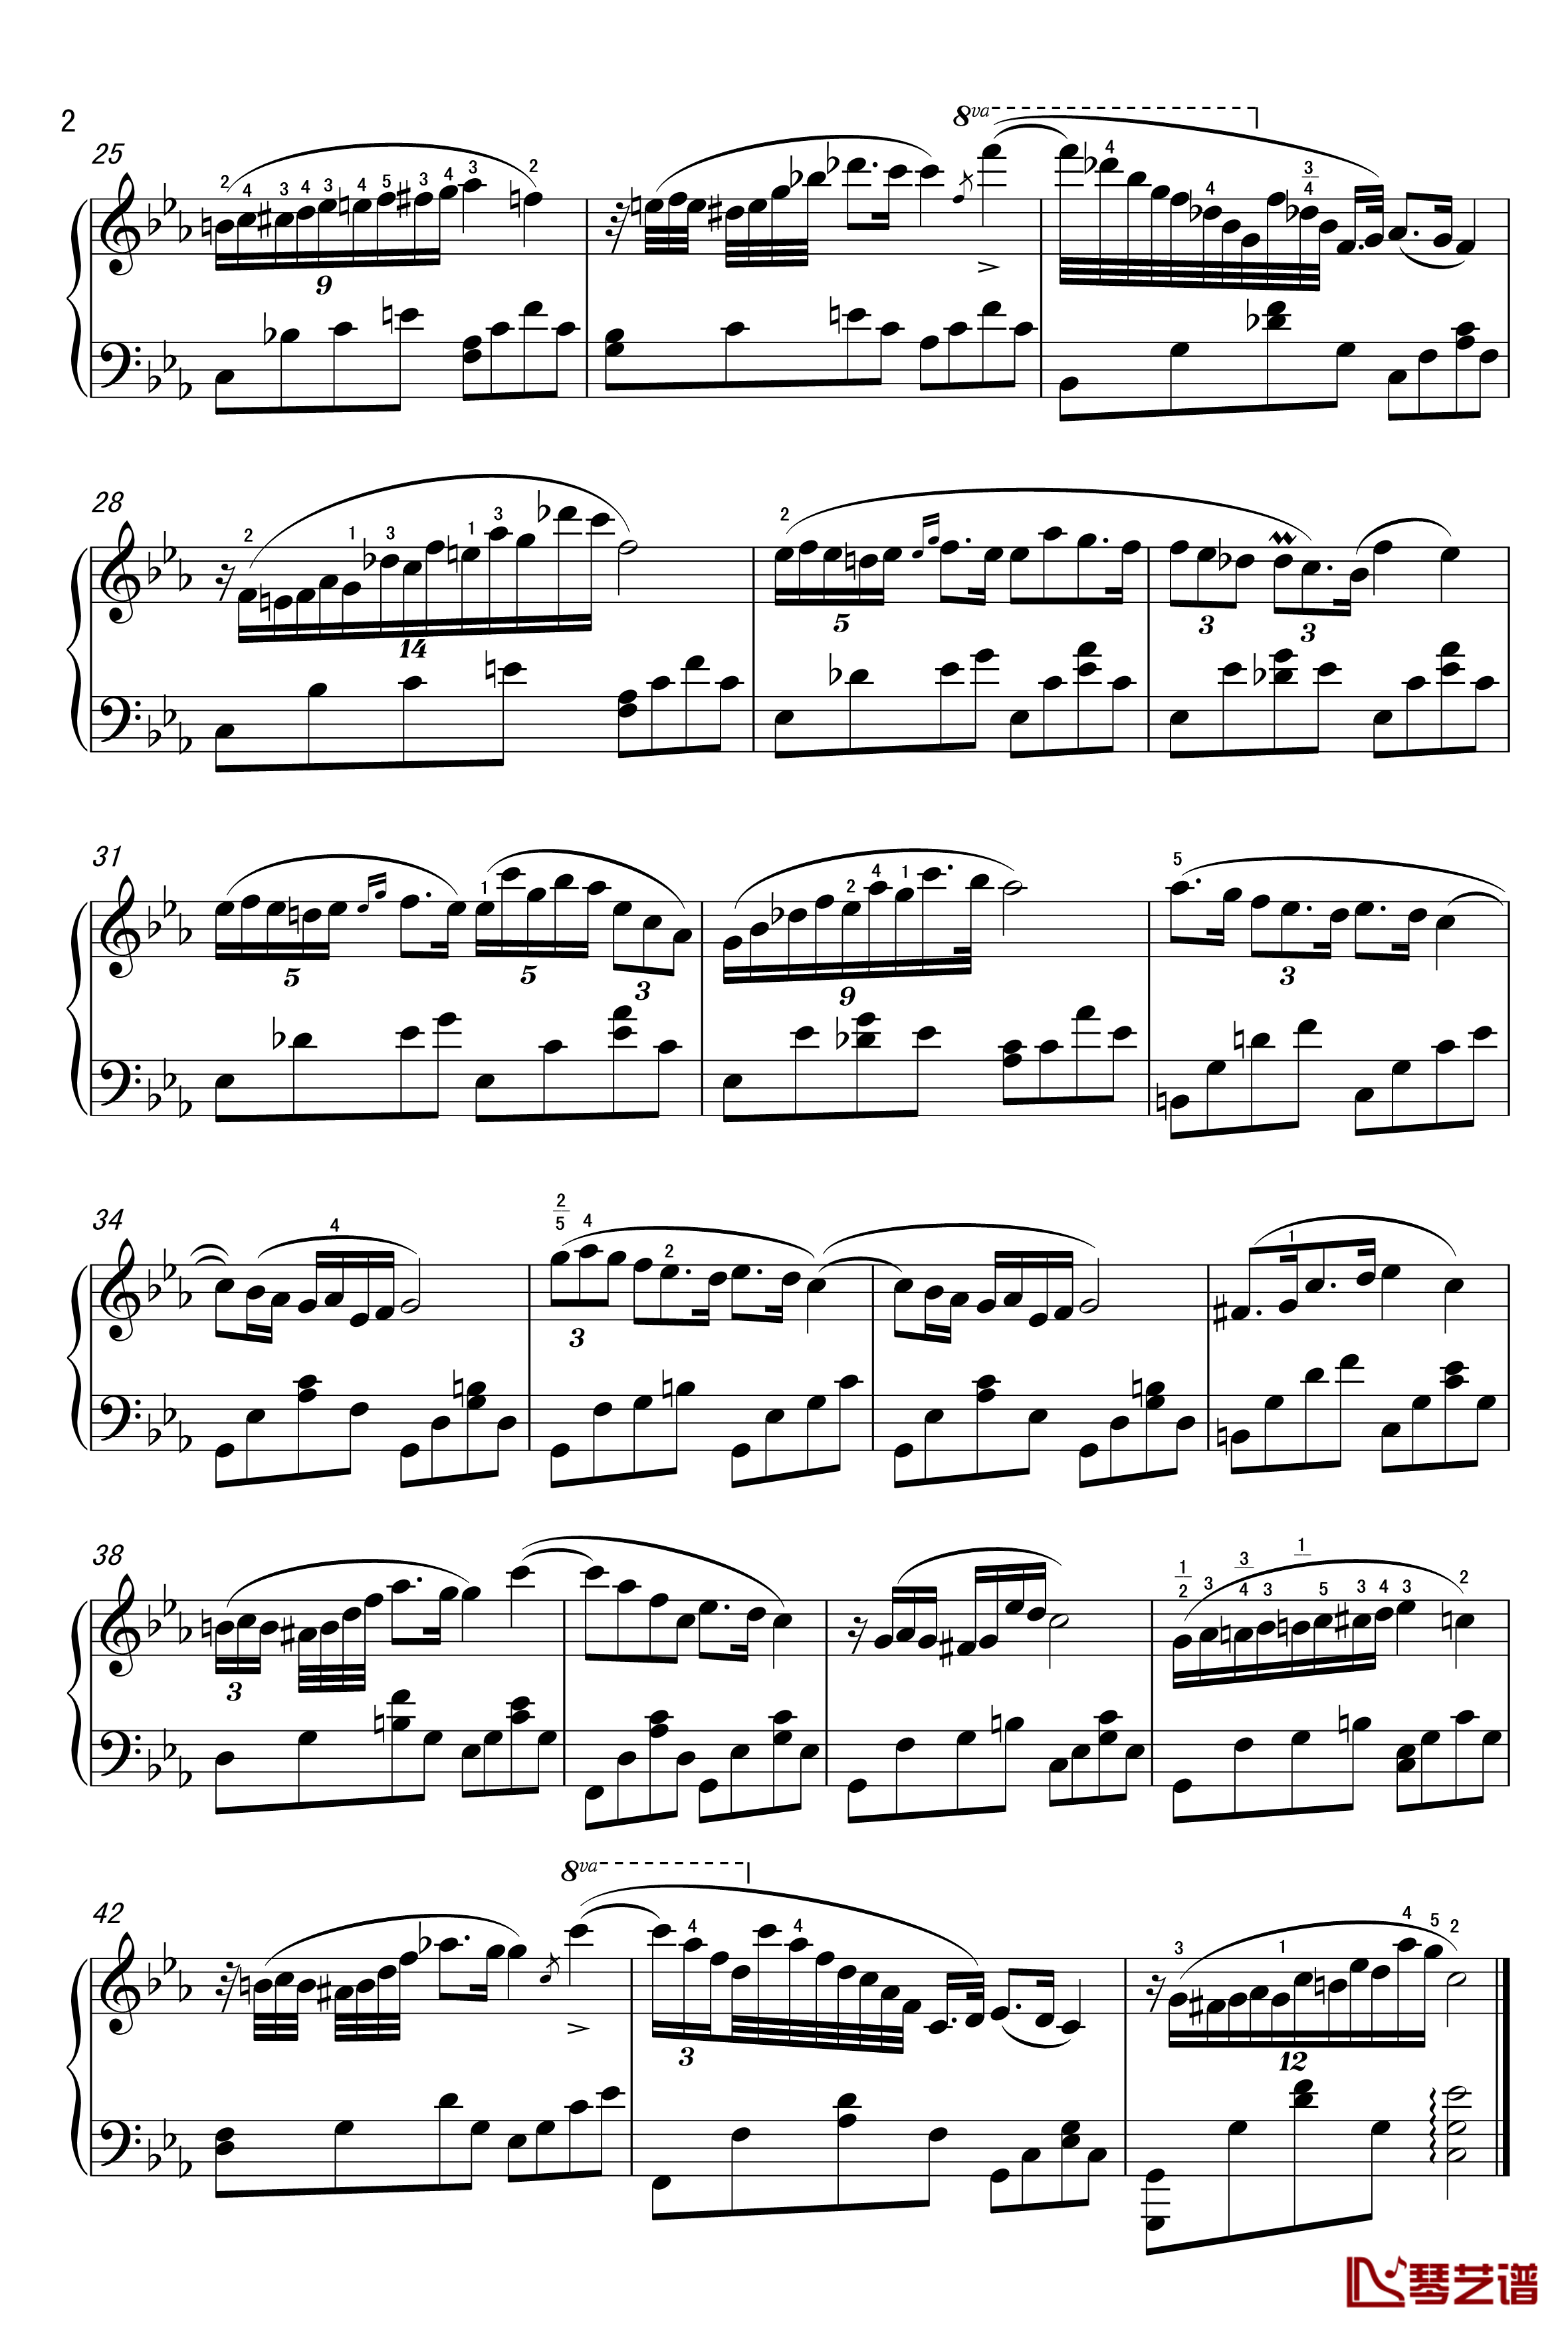 肖邦c小调夜曲钢琴谱-无编号-肖邦-chopin2